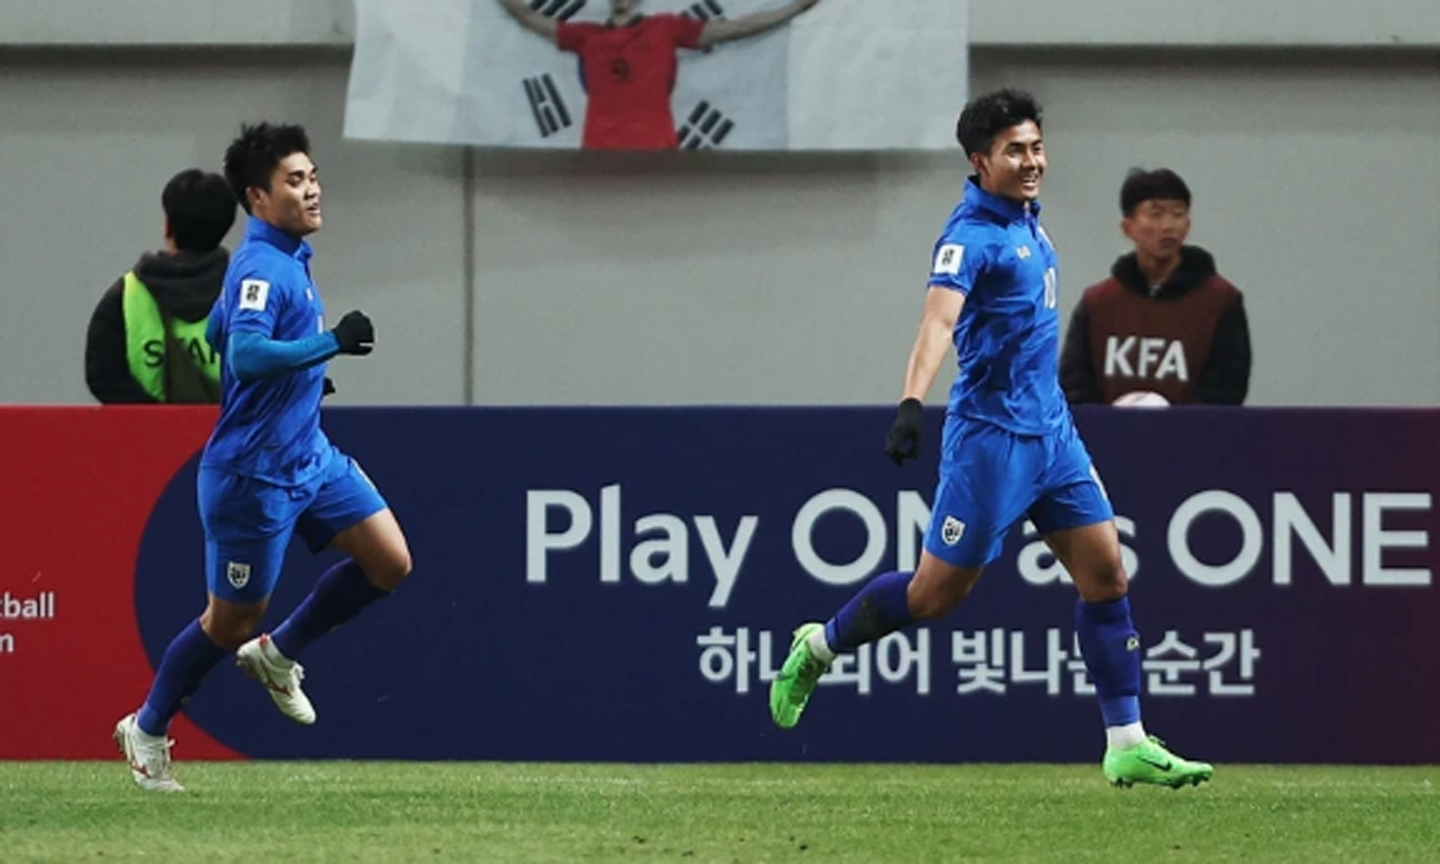 Đội tuyển Thái Lan bất ngờ cầm hòa đội tuyển Hàn Quốc ngay trên sân khách. (Ảnh: Reuters)